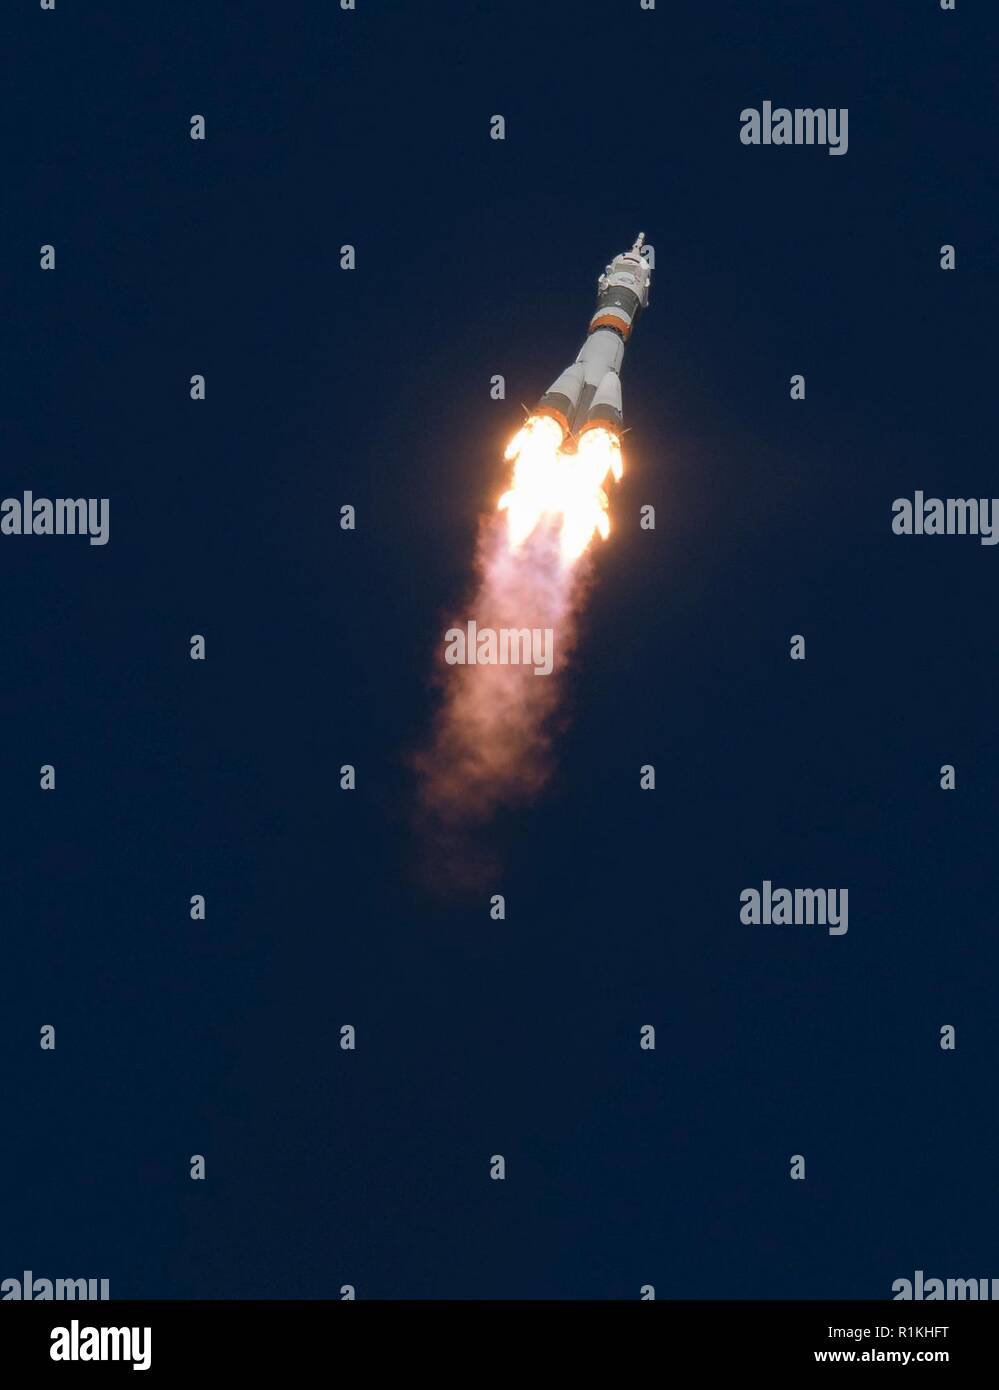 Il Soyuz MS-10 veicolo spaziale viene lanciato con spedizione 57 Tecnico di volo Nick aia della NASA e tecnico di volo Alexey Ovchinin di Roscosmos, giovedì, 11 ott. 2018 al cosmodromo di Baikonur in Kazakistan. Durante la navicella spaziale Soyuz climb in orbita un anomalia occorsa, risultante in un abort downrange. L'equipaggio è stato rapidamente recuperato ed è in buone condizioni. Foto Stock